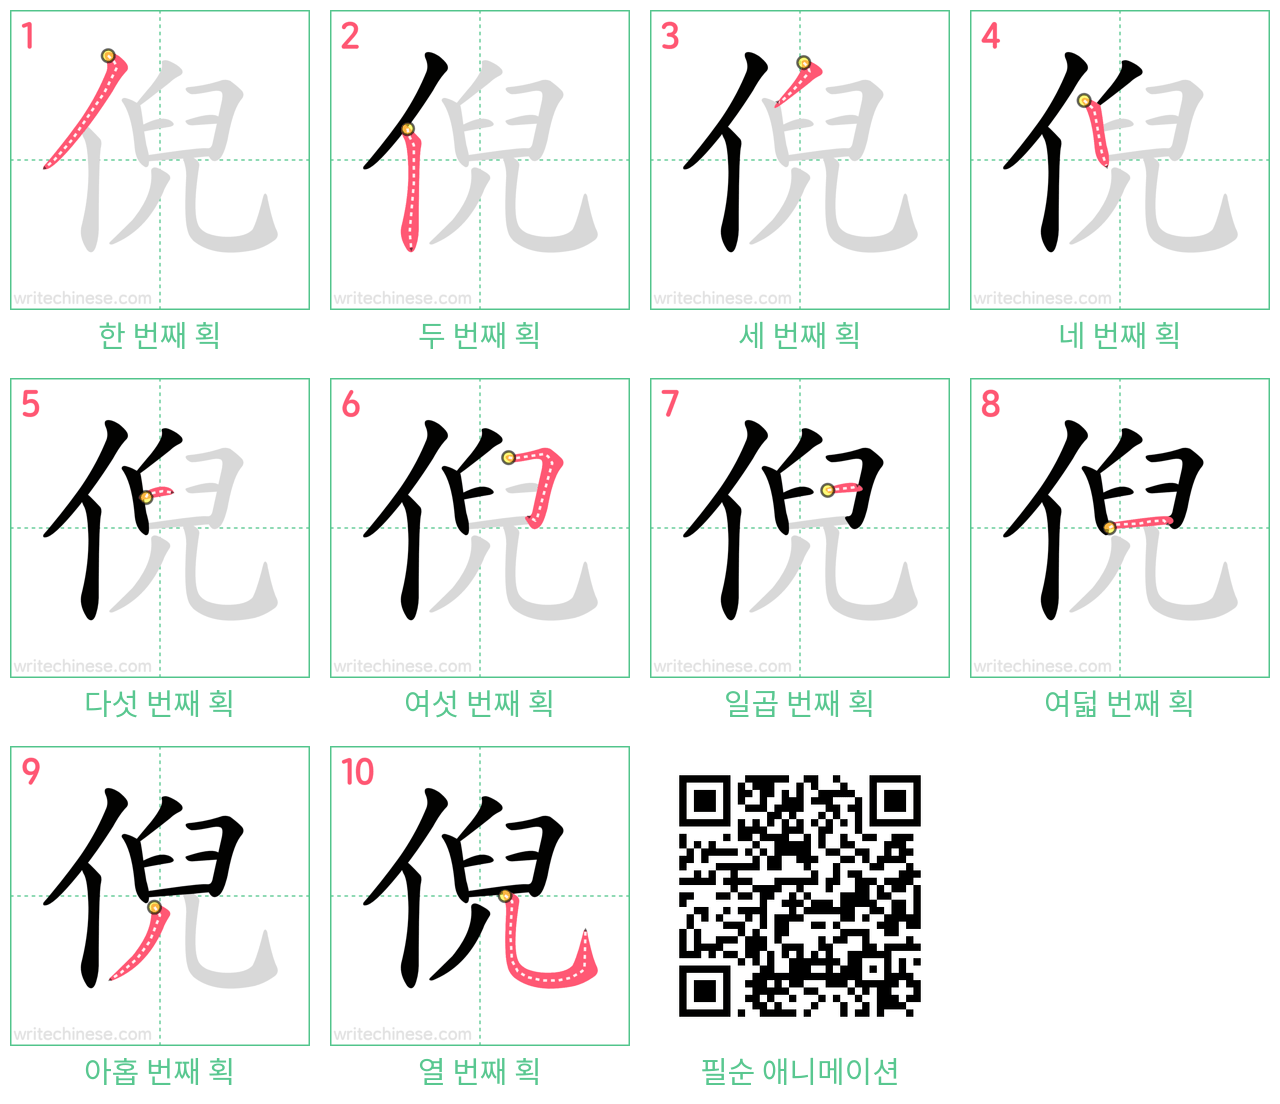 倪 step-by-step stroke order diagrams